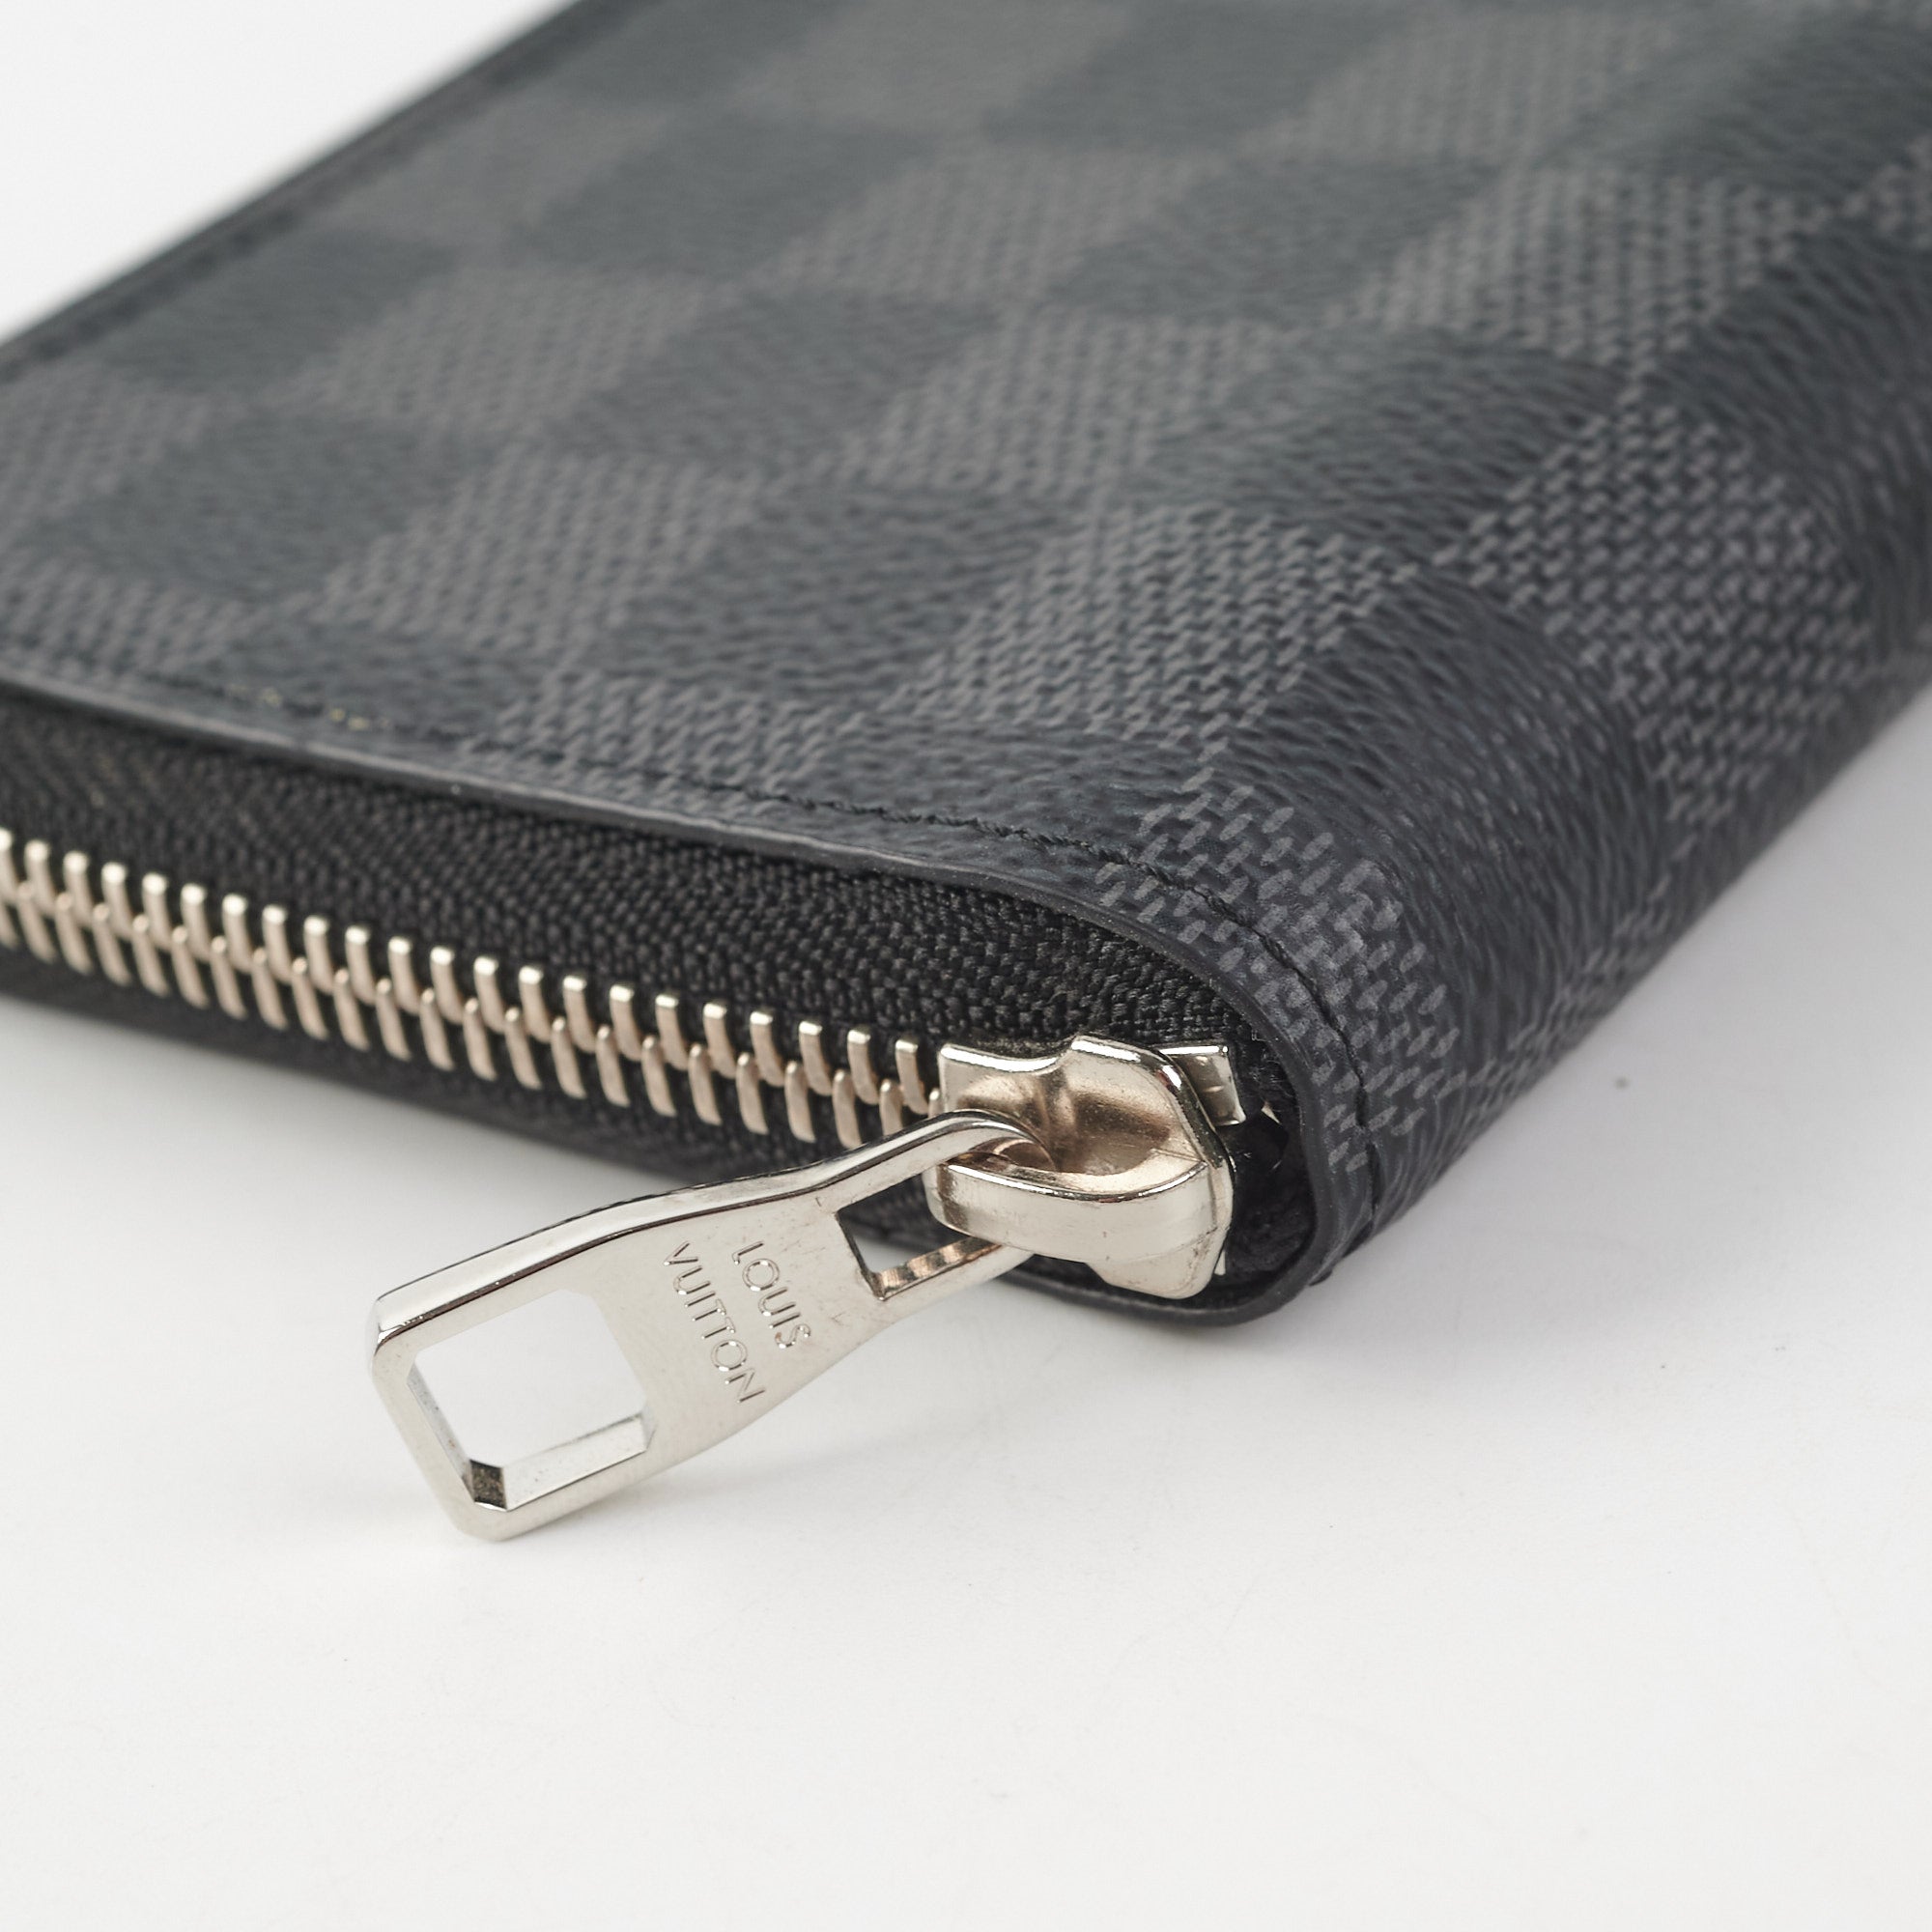 Louis Vuitton Zip Wallet Damier Graphite - THE PURSE AFFAIR